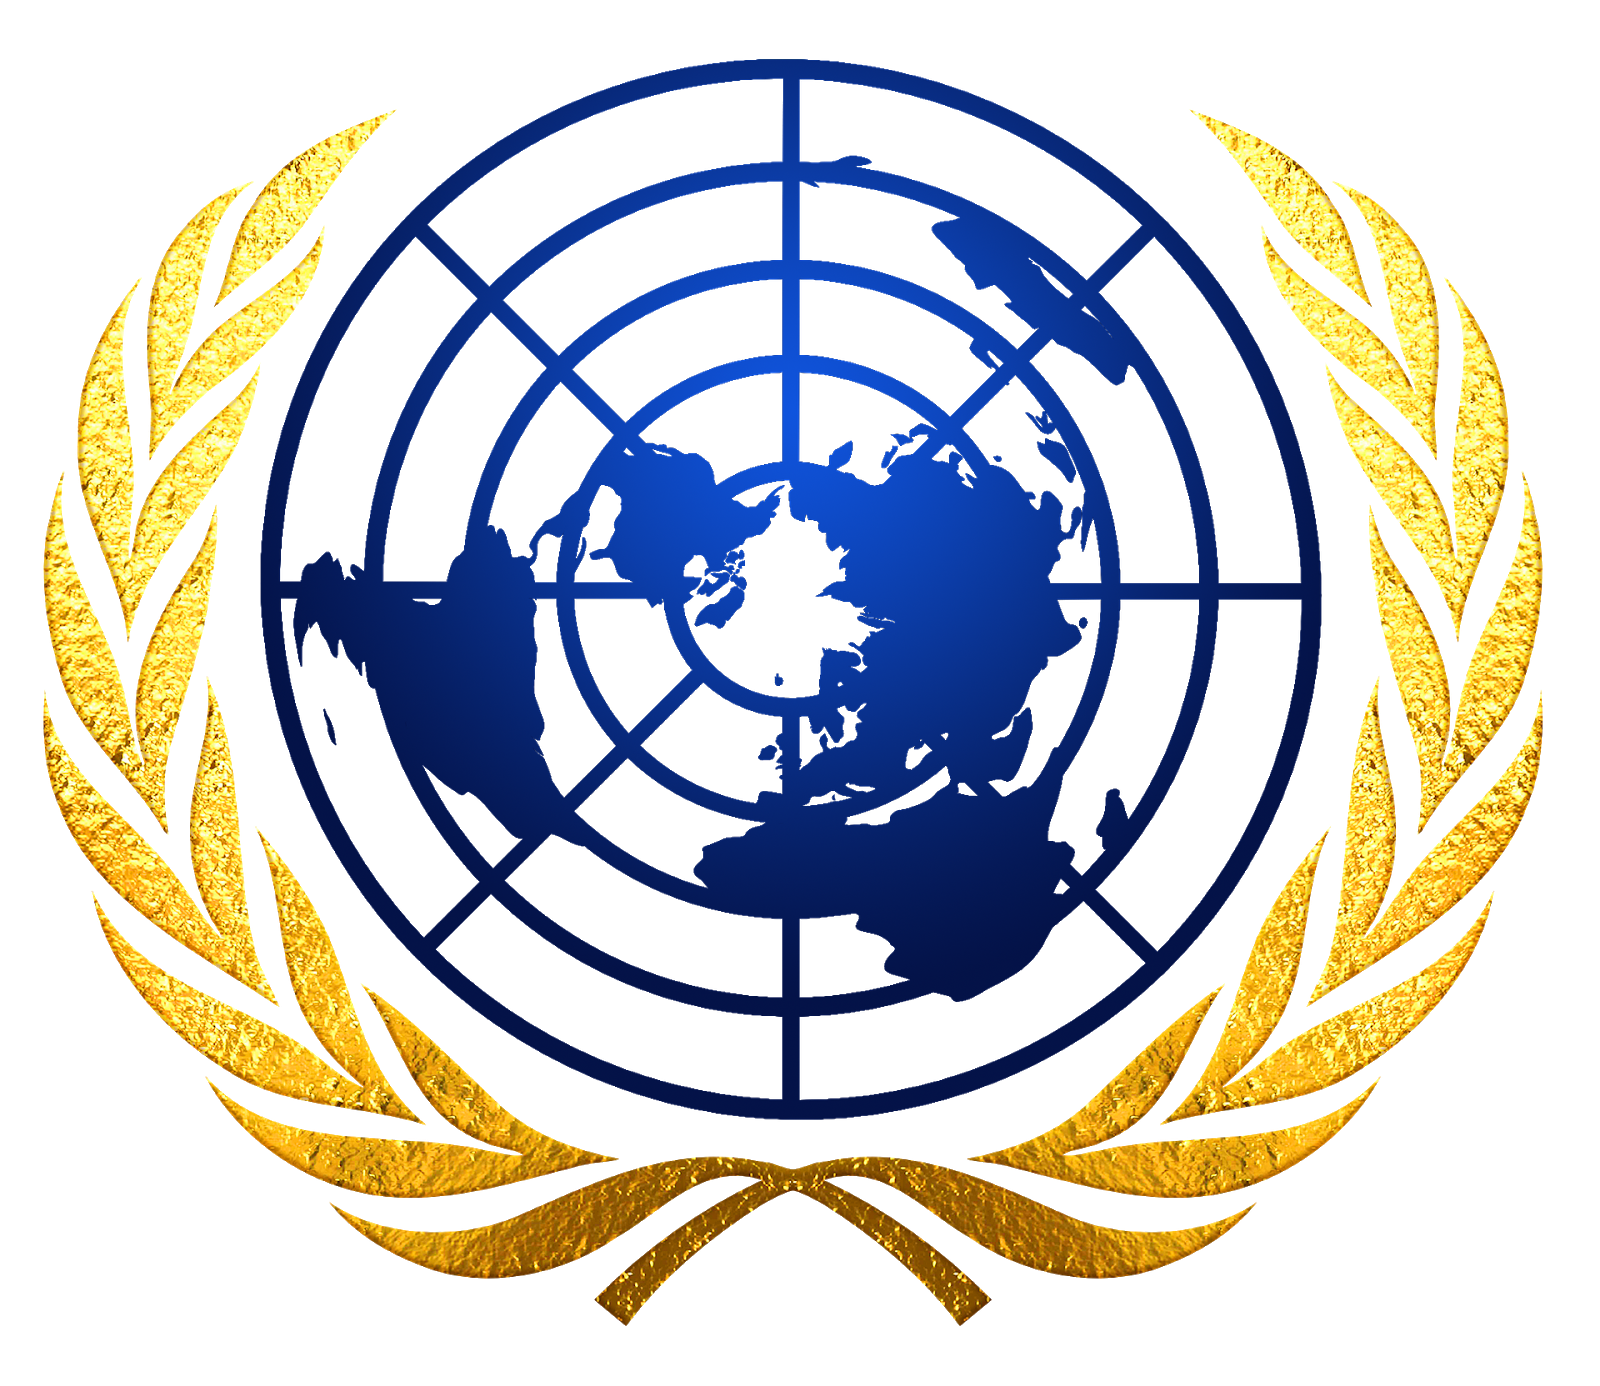 United world nation. Совет безопасности ООН эмблема. Генеральная Ассамблея ООН эмблема. Организация Объединённых наций ООН эмблема. Совет безопасности ООН символ.